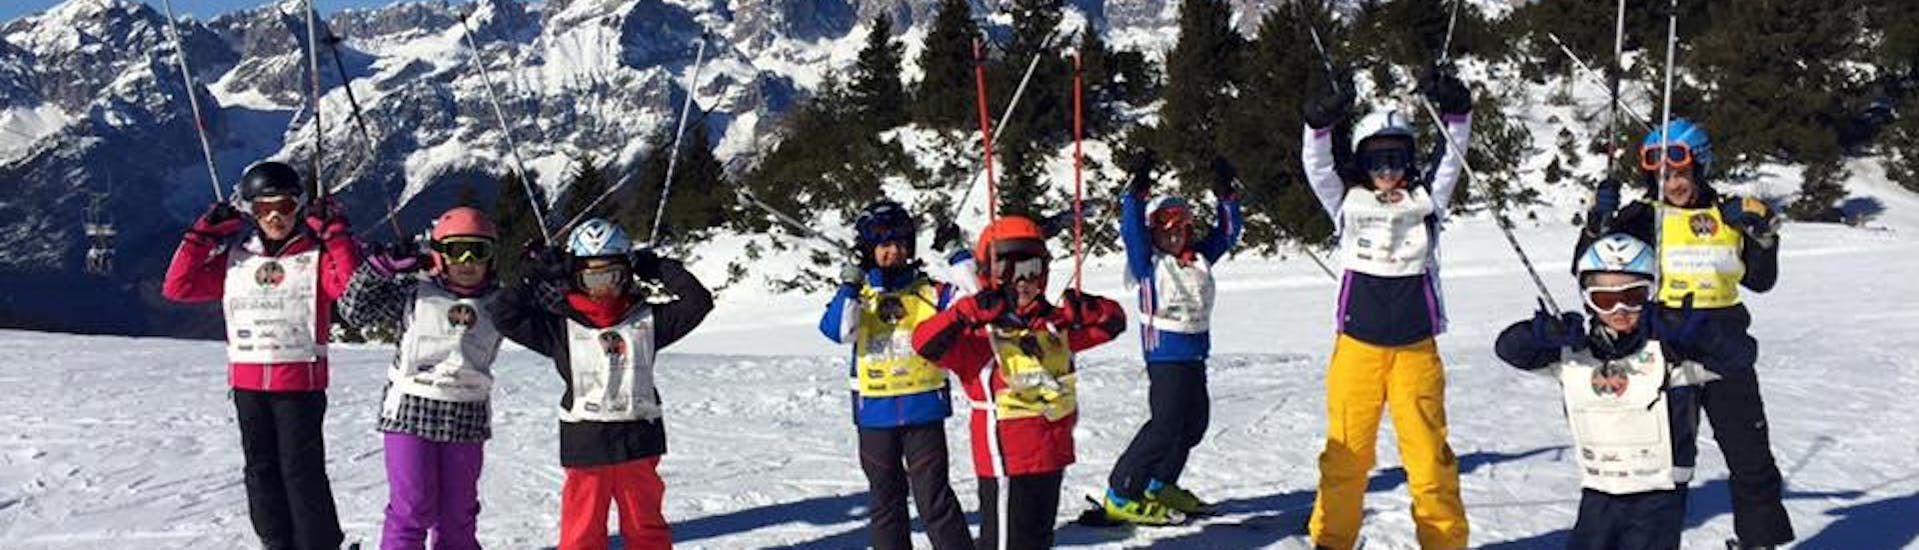 Bambini felici ad Andalo durante una delle Lezioni di sci per bambini (4-5 anni) - Baby Elite.